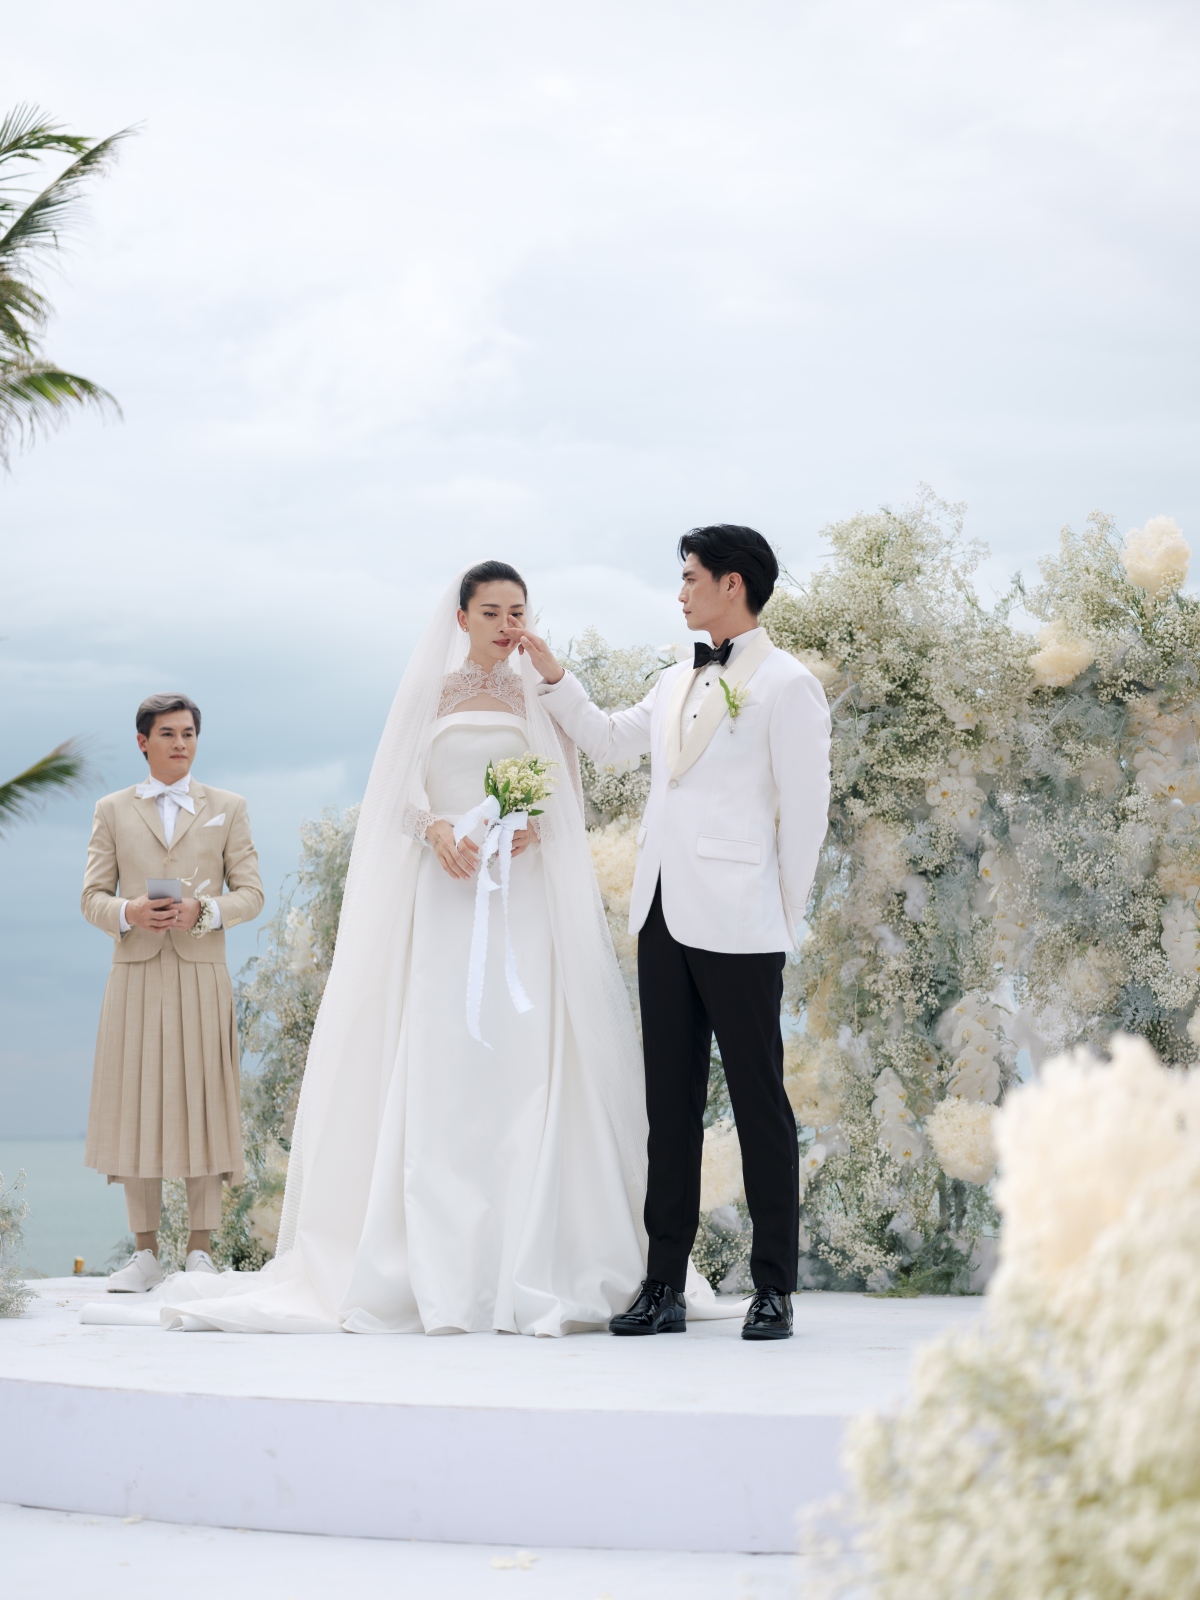 Hoa cầm tay trong đám cưới Ngô Thanh Vân thuộc top đắt đỏ nhất thế giới